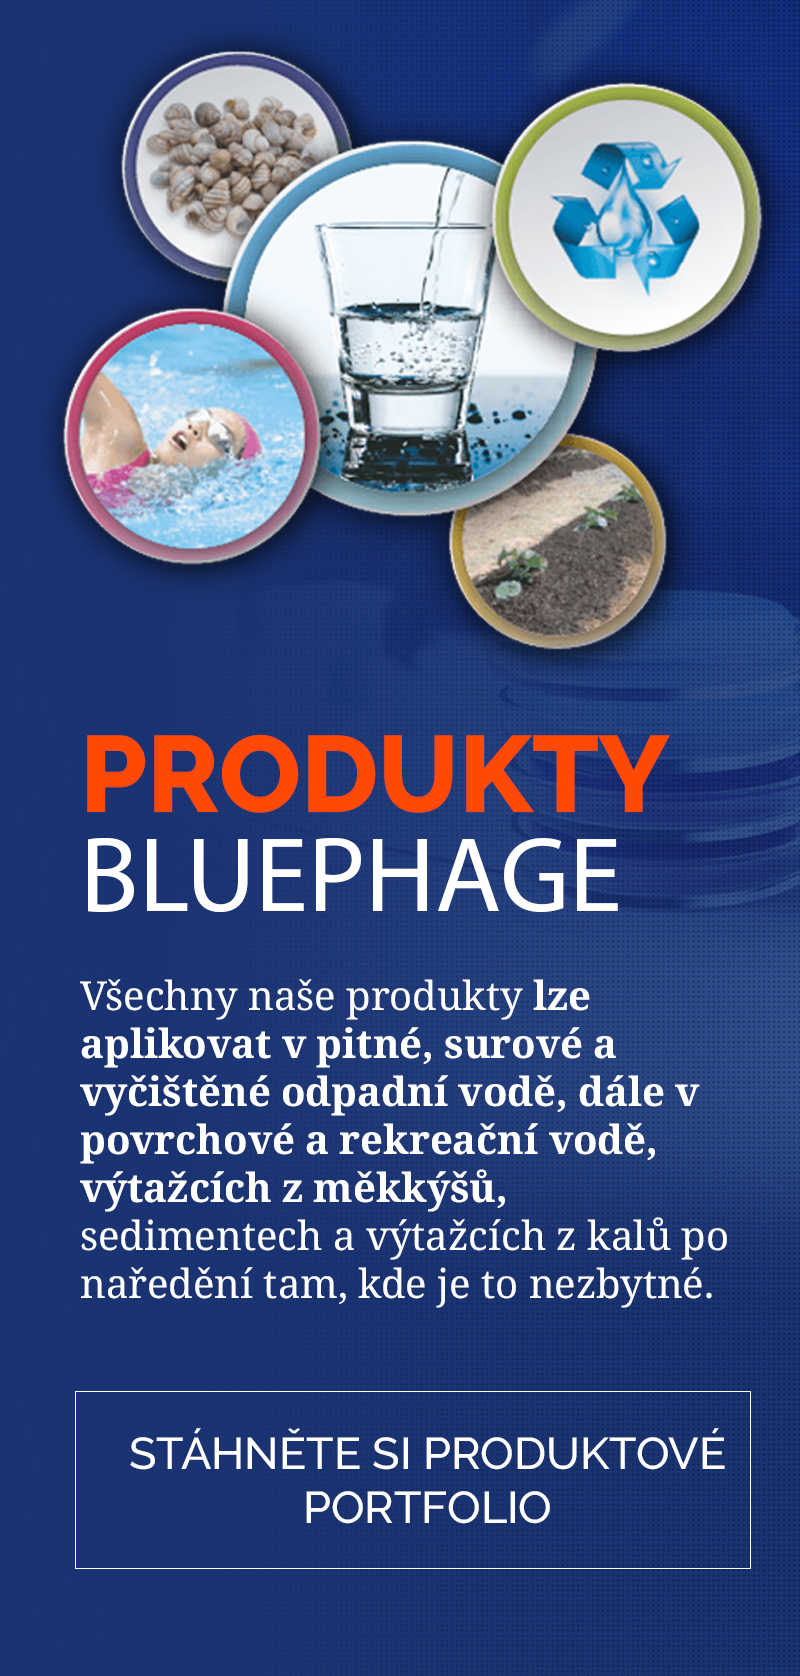 Bluephage product portfolio